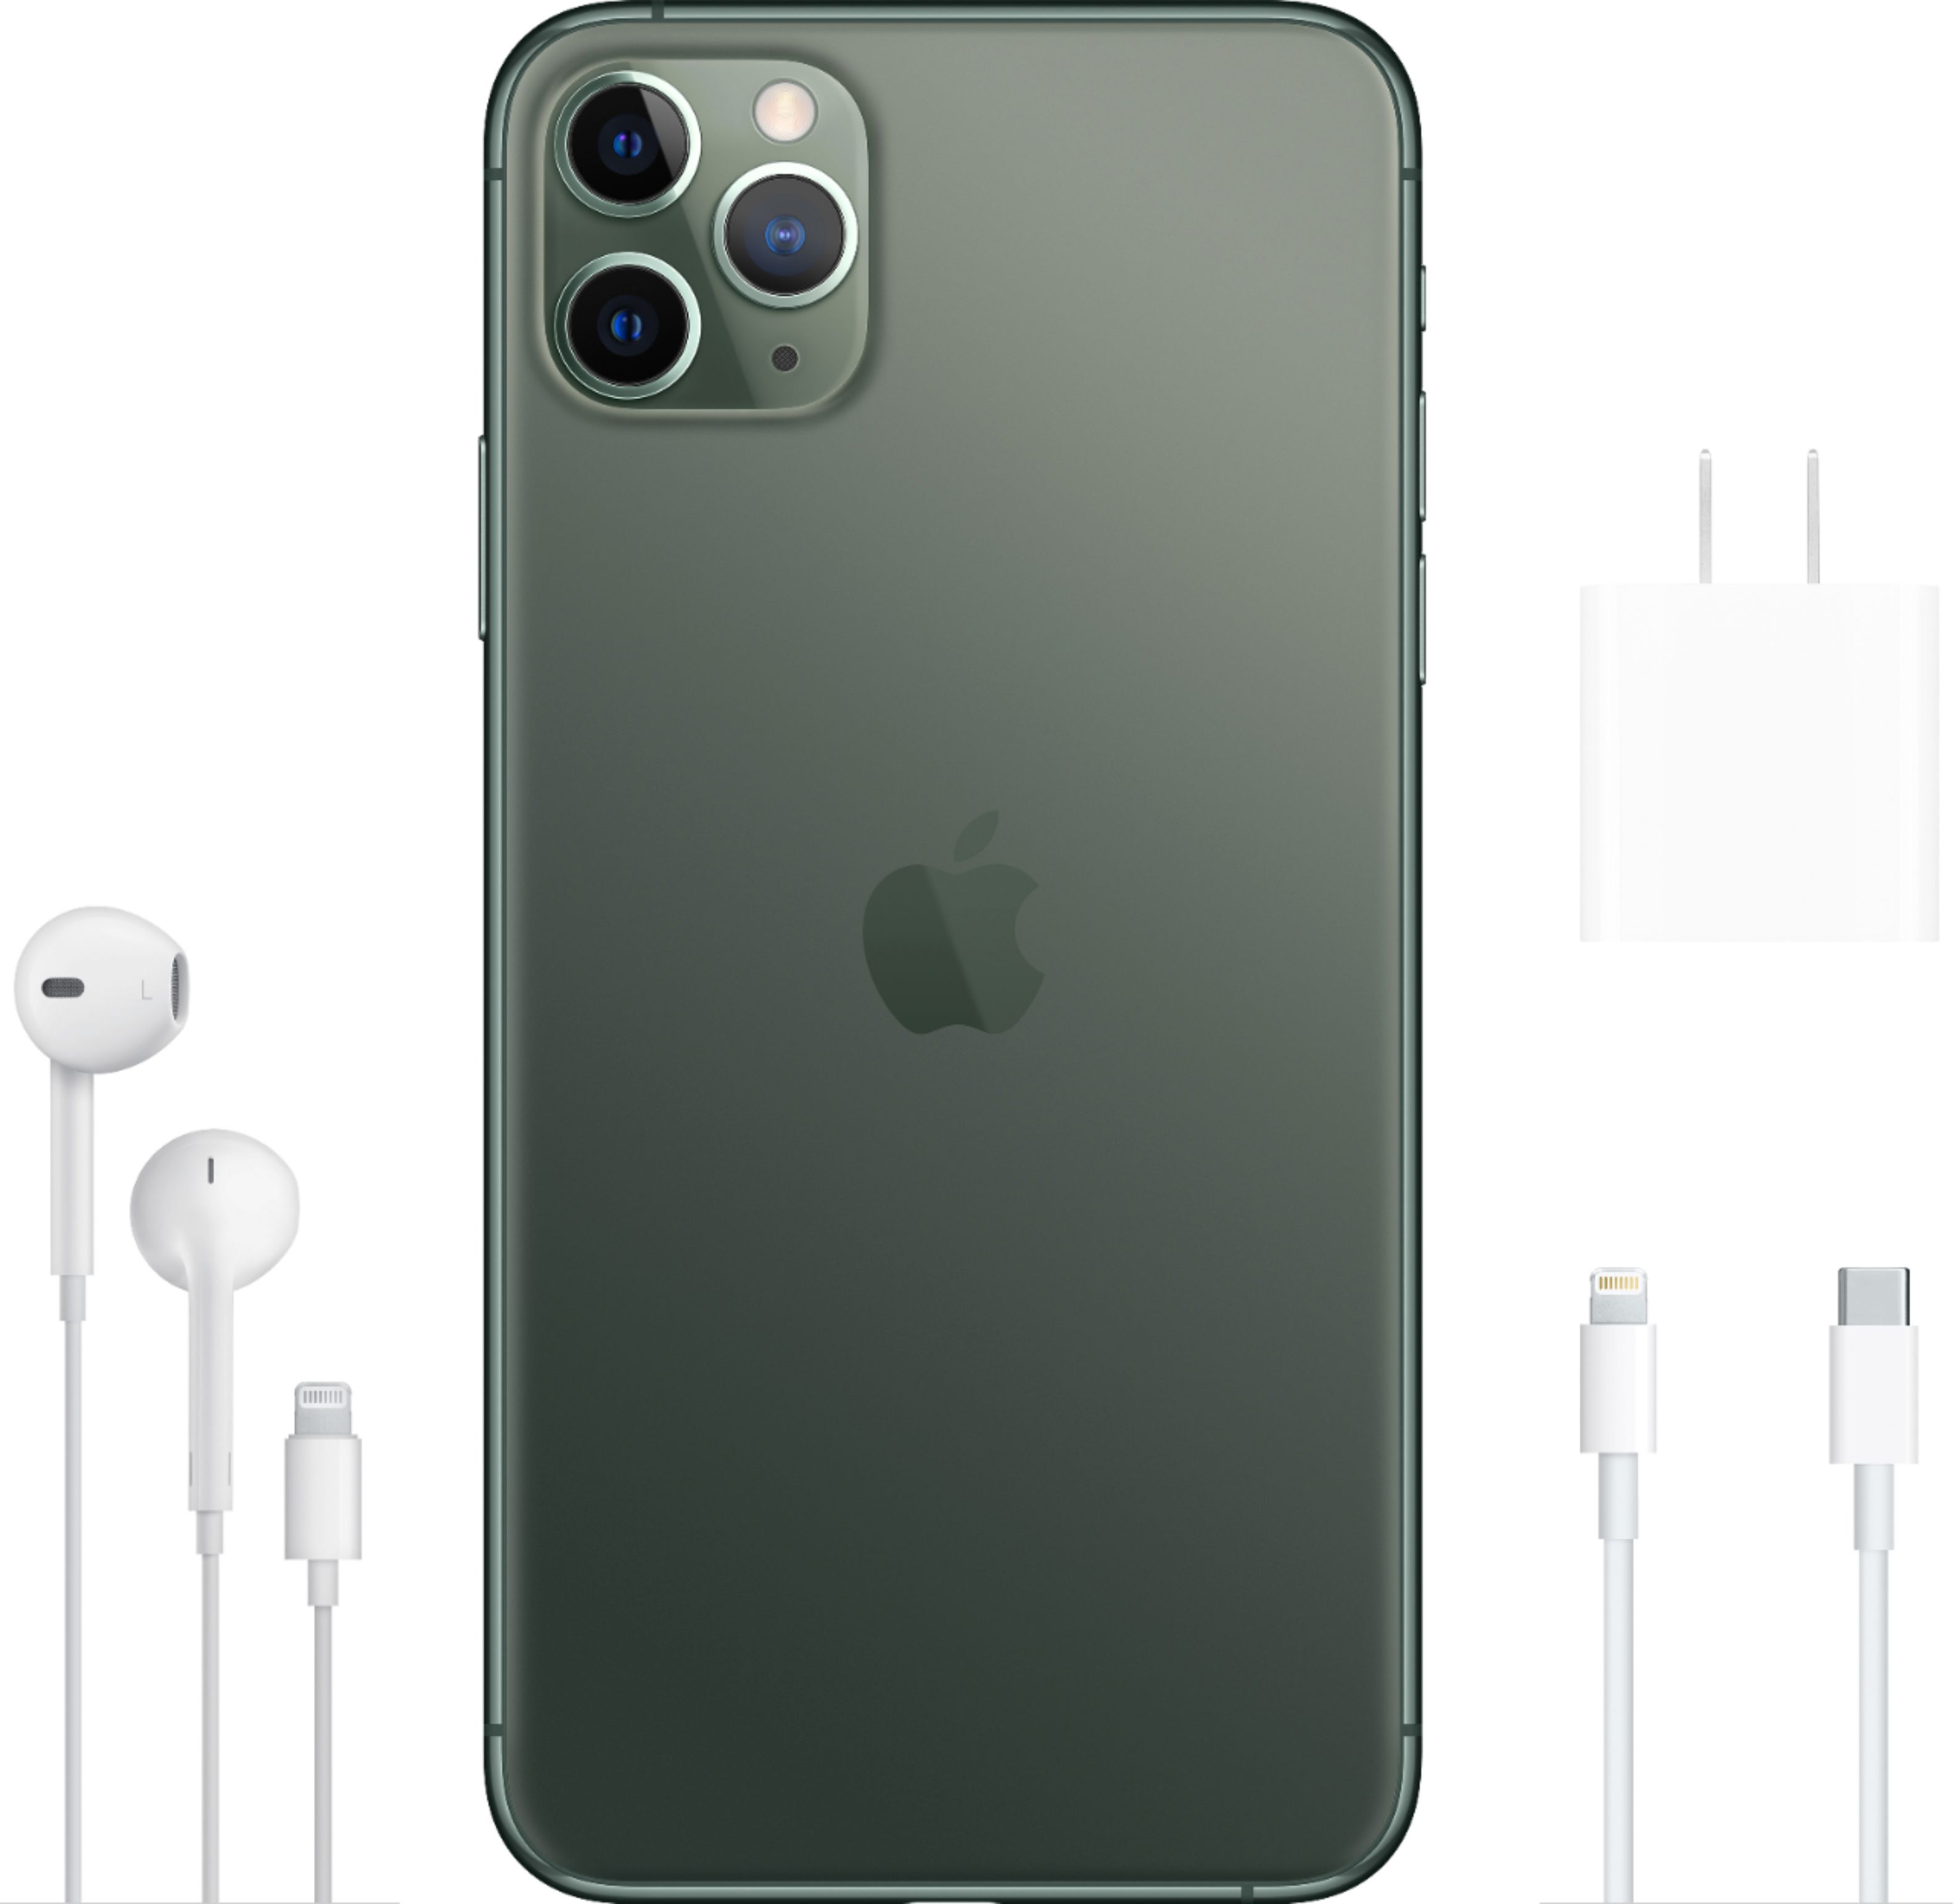 Apple Iphone 11 Pro Max 64gb Midnight Green At T Mwh22ll A